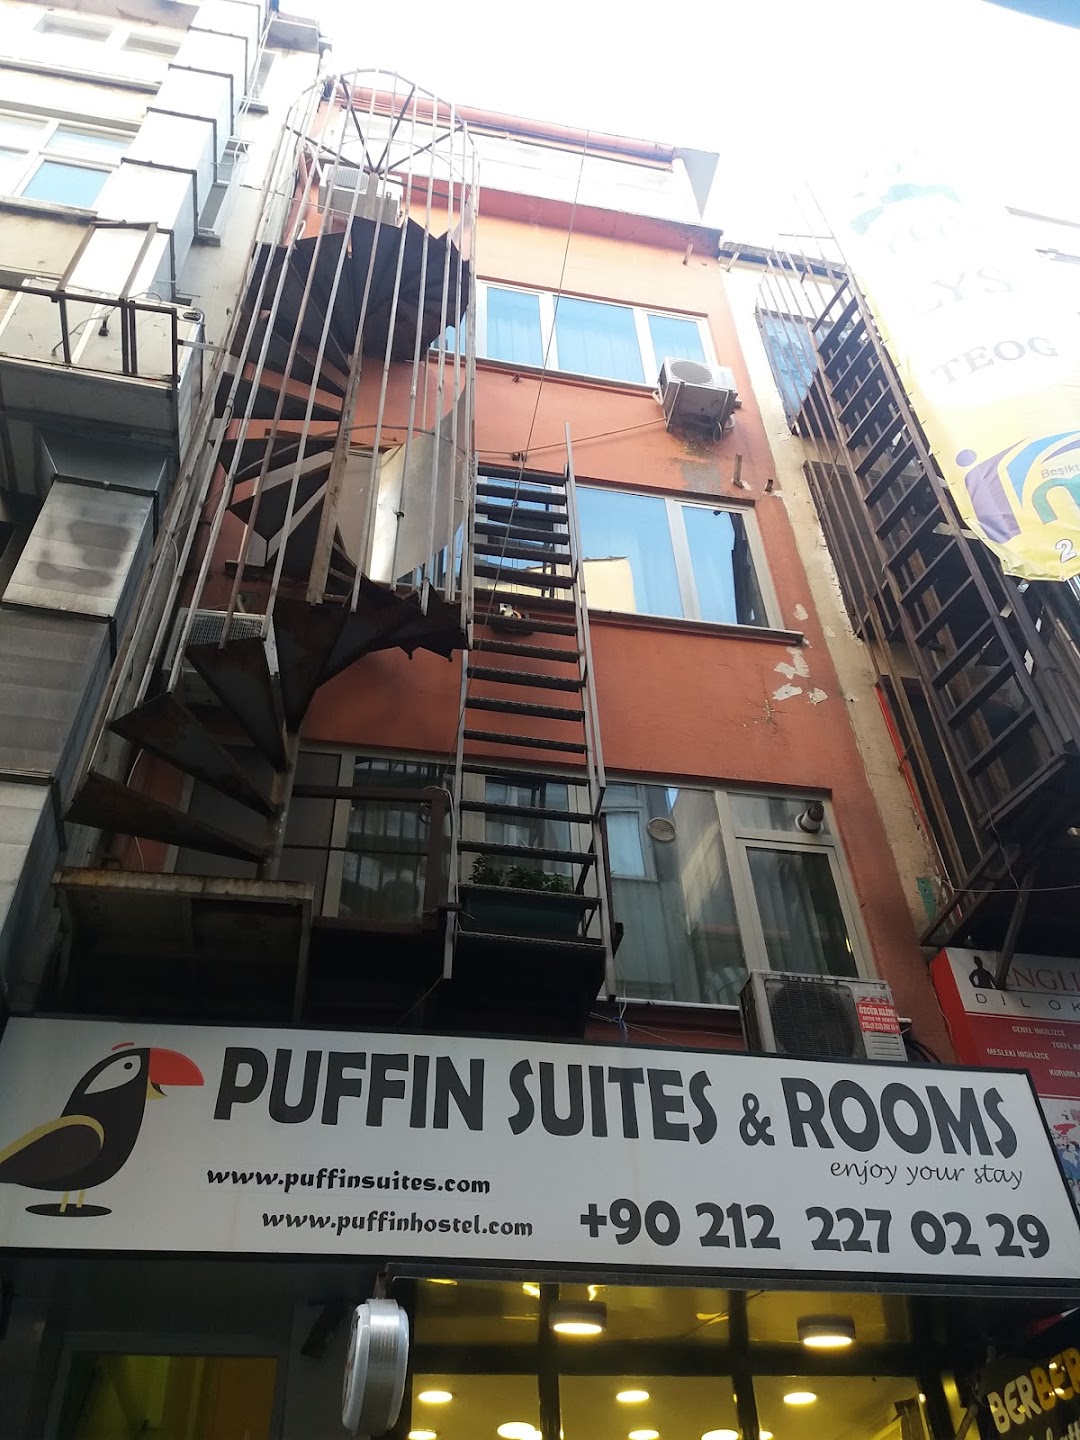 Puffin Suites